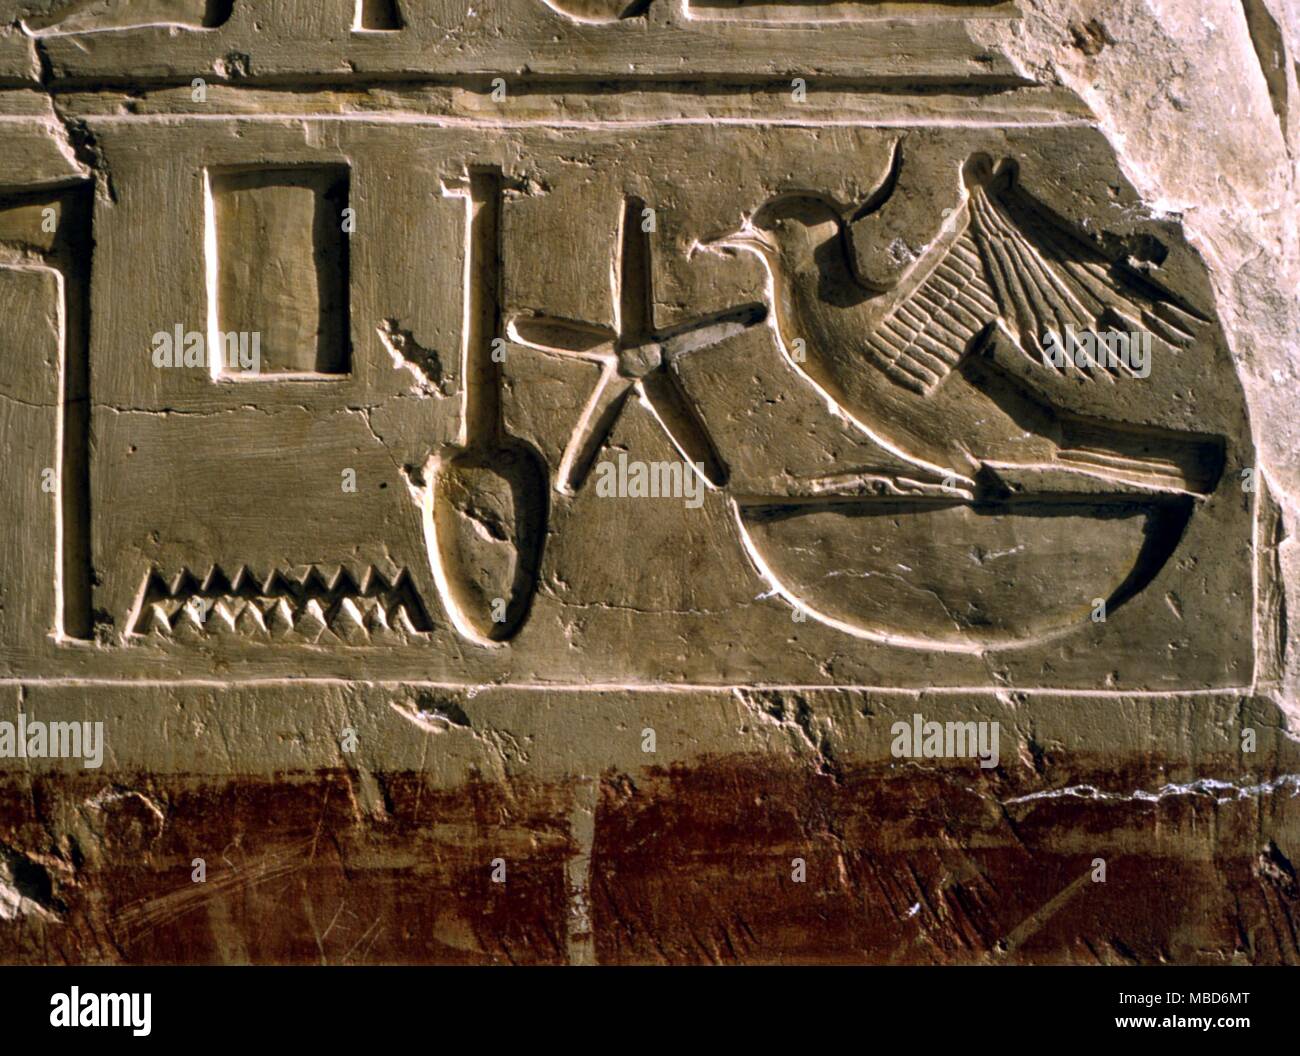 La mythologie égyptienne - Alphabets - hiéroglyphes égyptiens de l'ancien Temple d'Amon à Karnak (l'antique Thèbes) Louxor en Égypte. Parmi les symboles est la star de la SBA. Banque D'Images